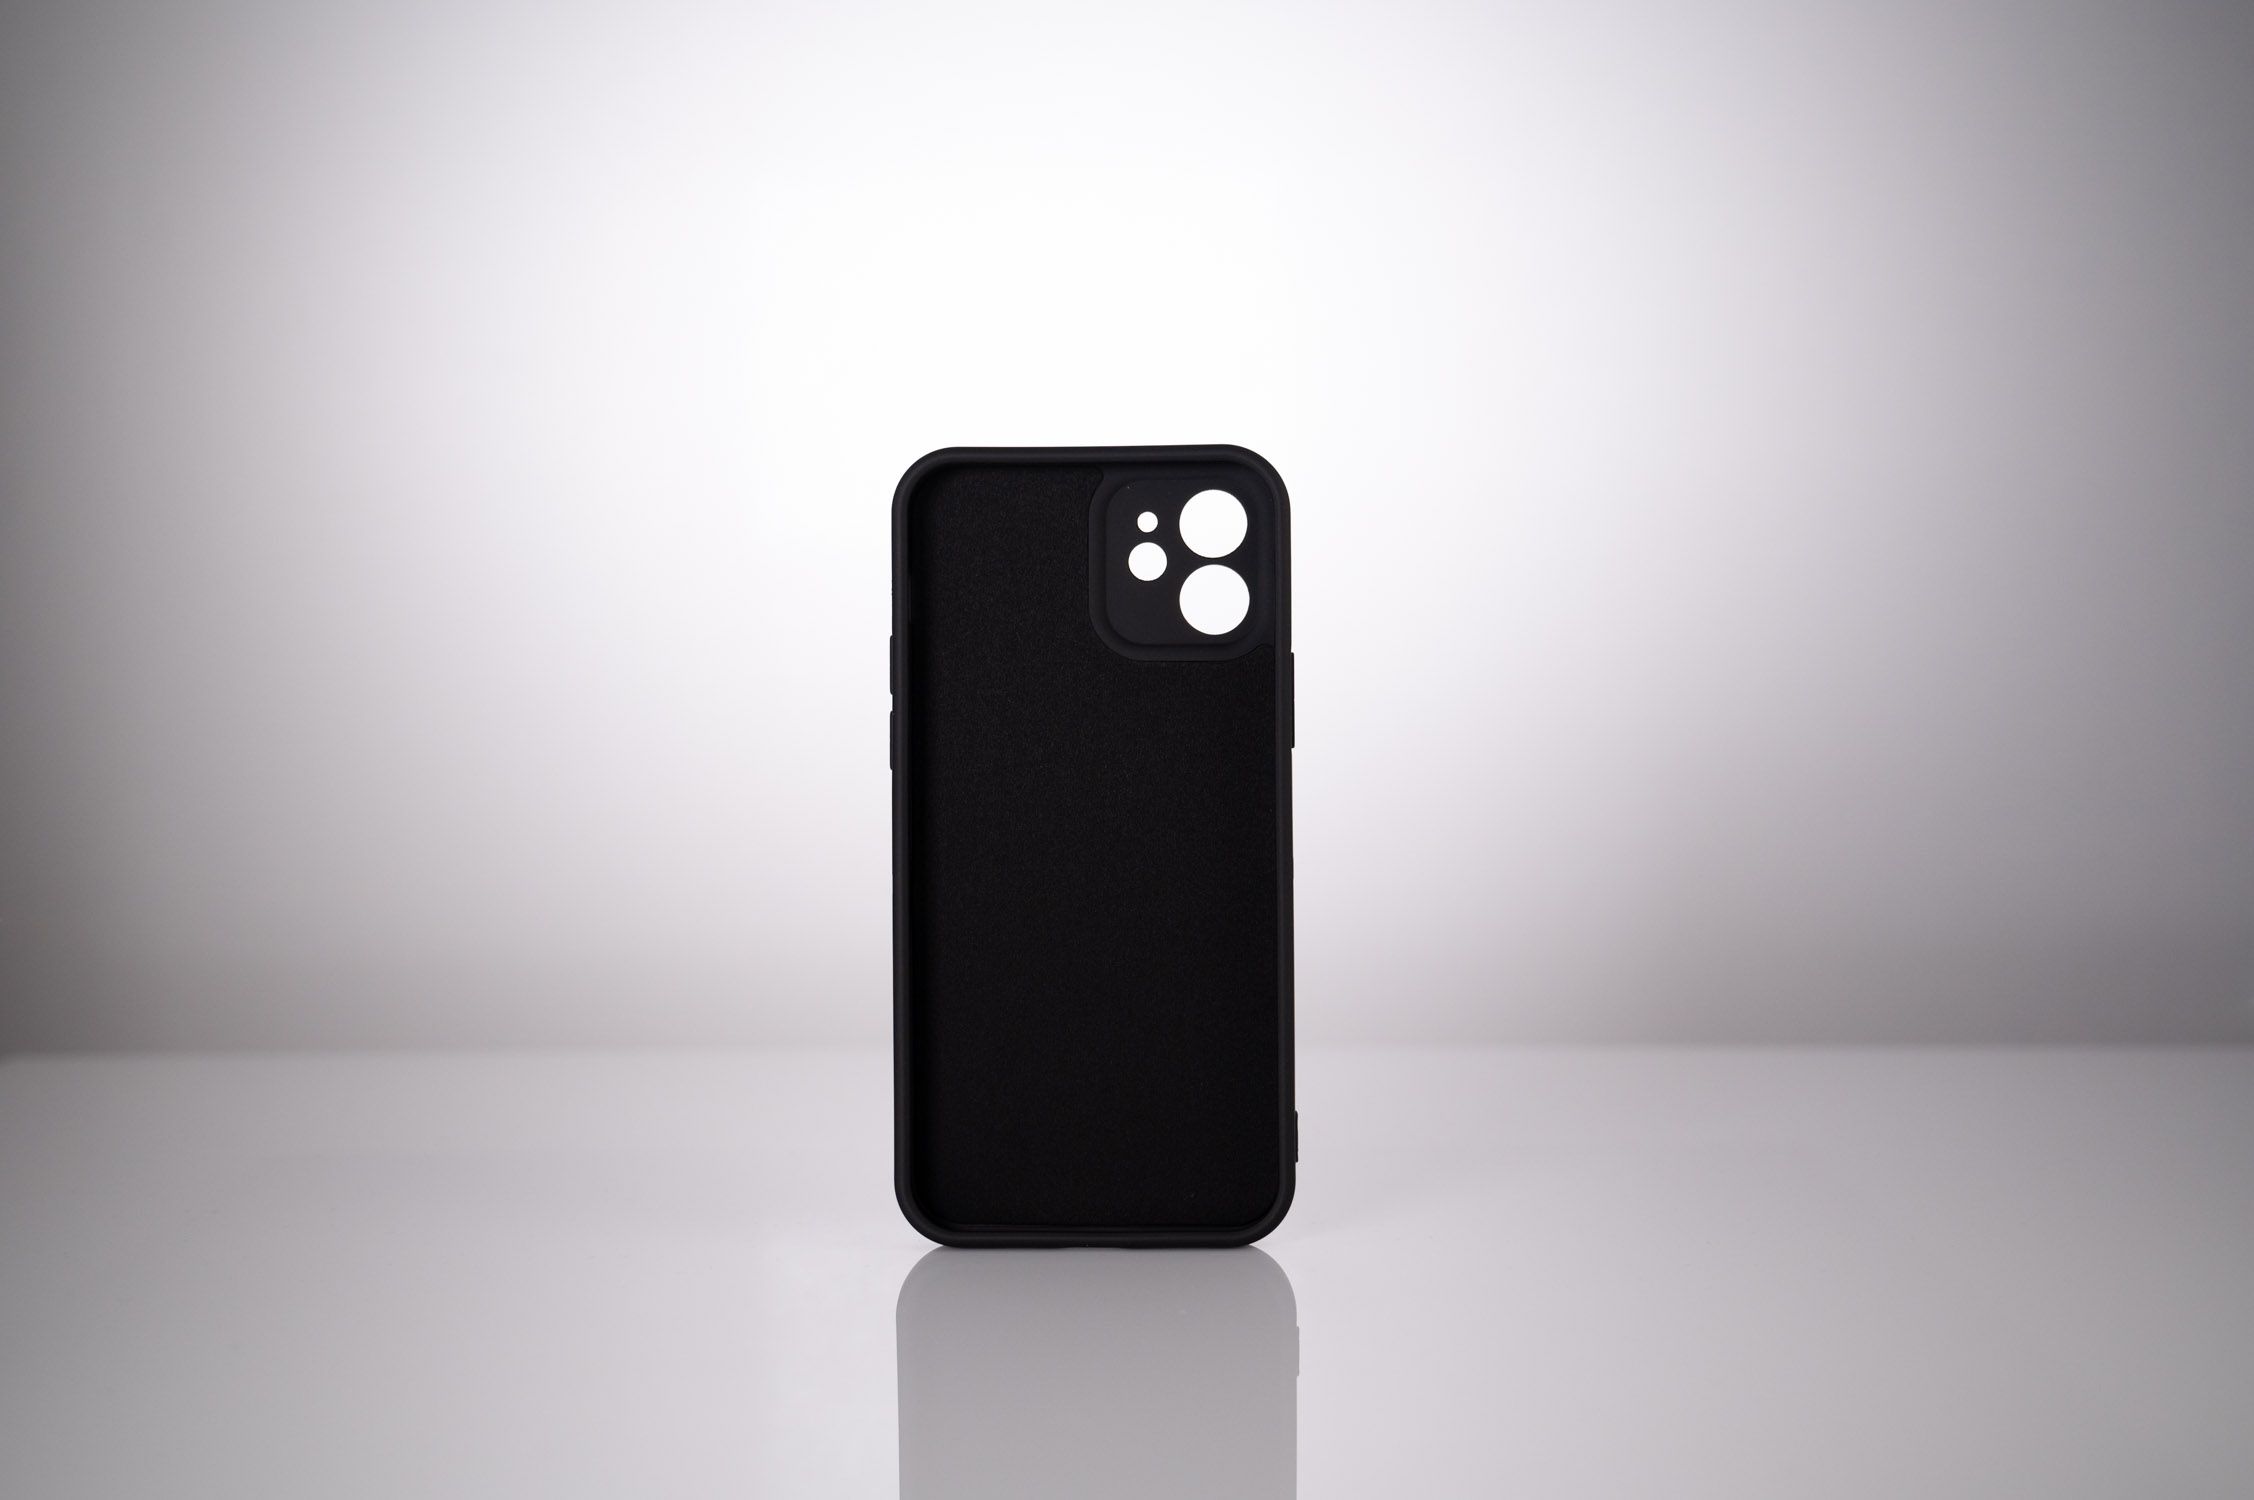 HUSA SMARTPHONE Spacer pentru Iphone 13 Pro Max, grosime 1.5mm, material flexibil TPU, negru 